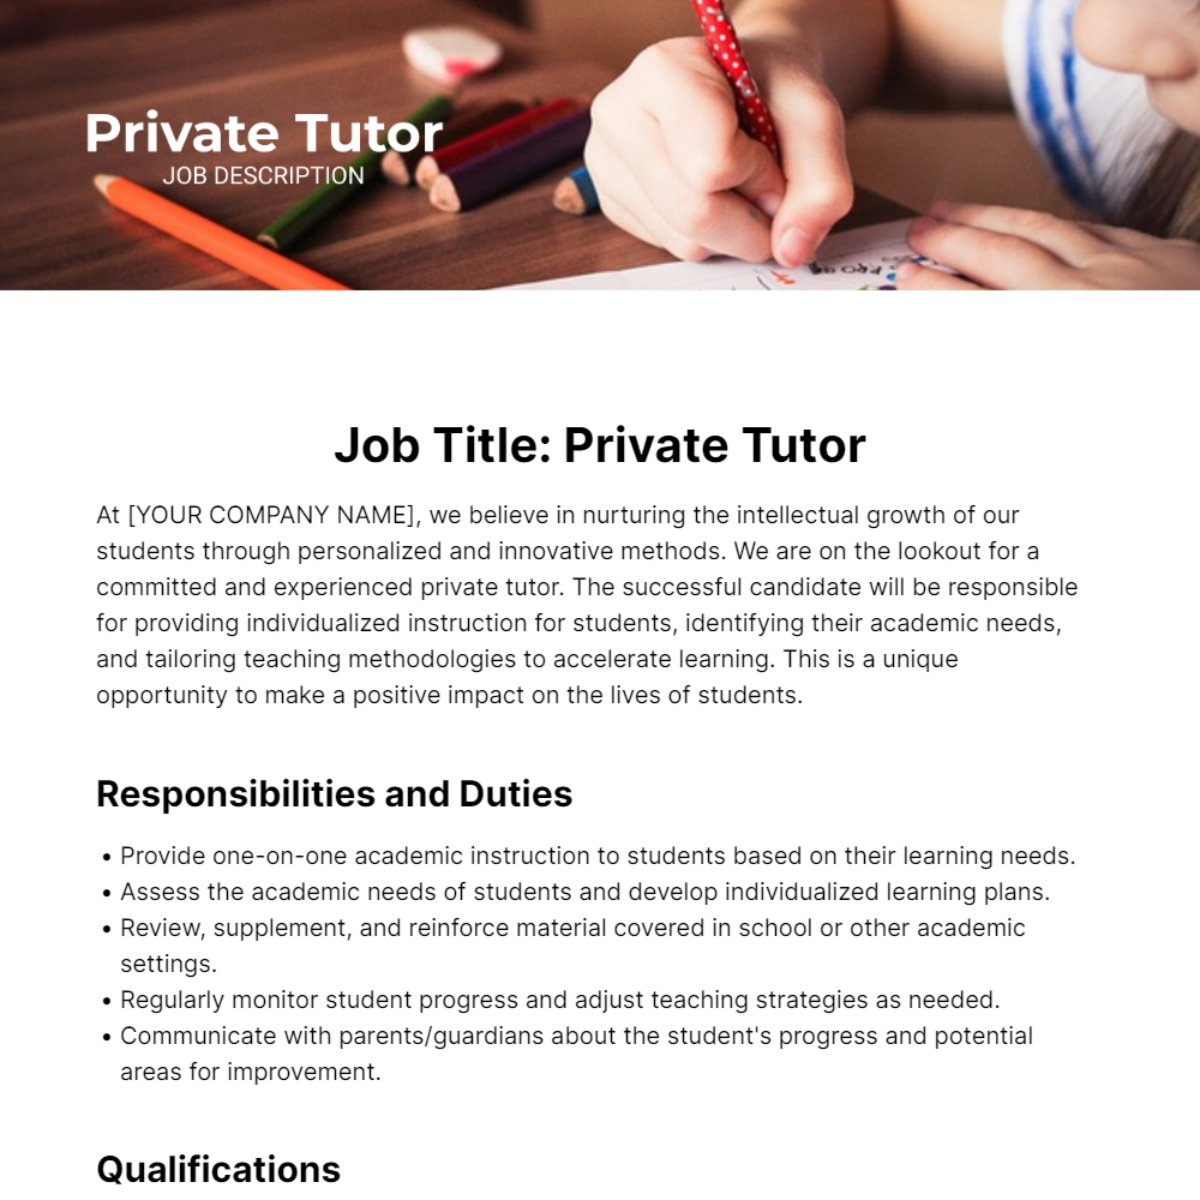 Private Tutor Job Description Template